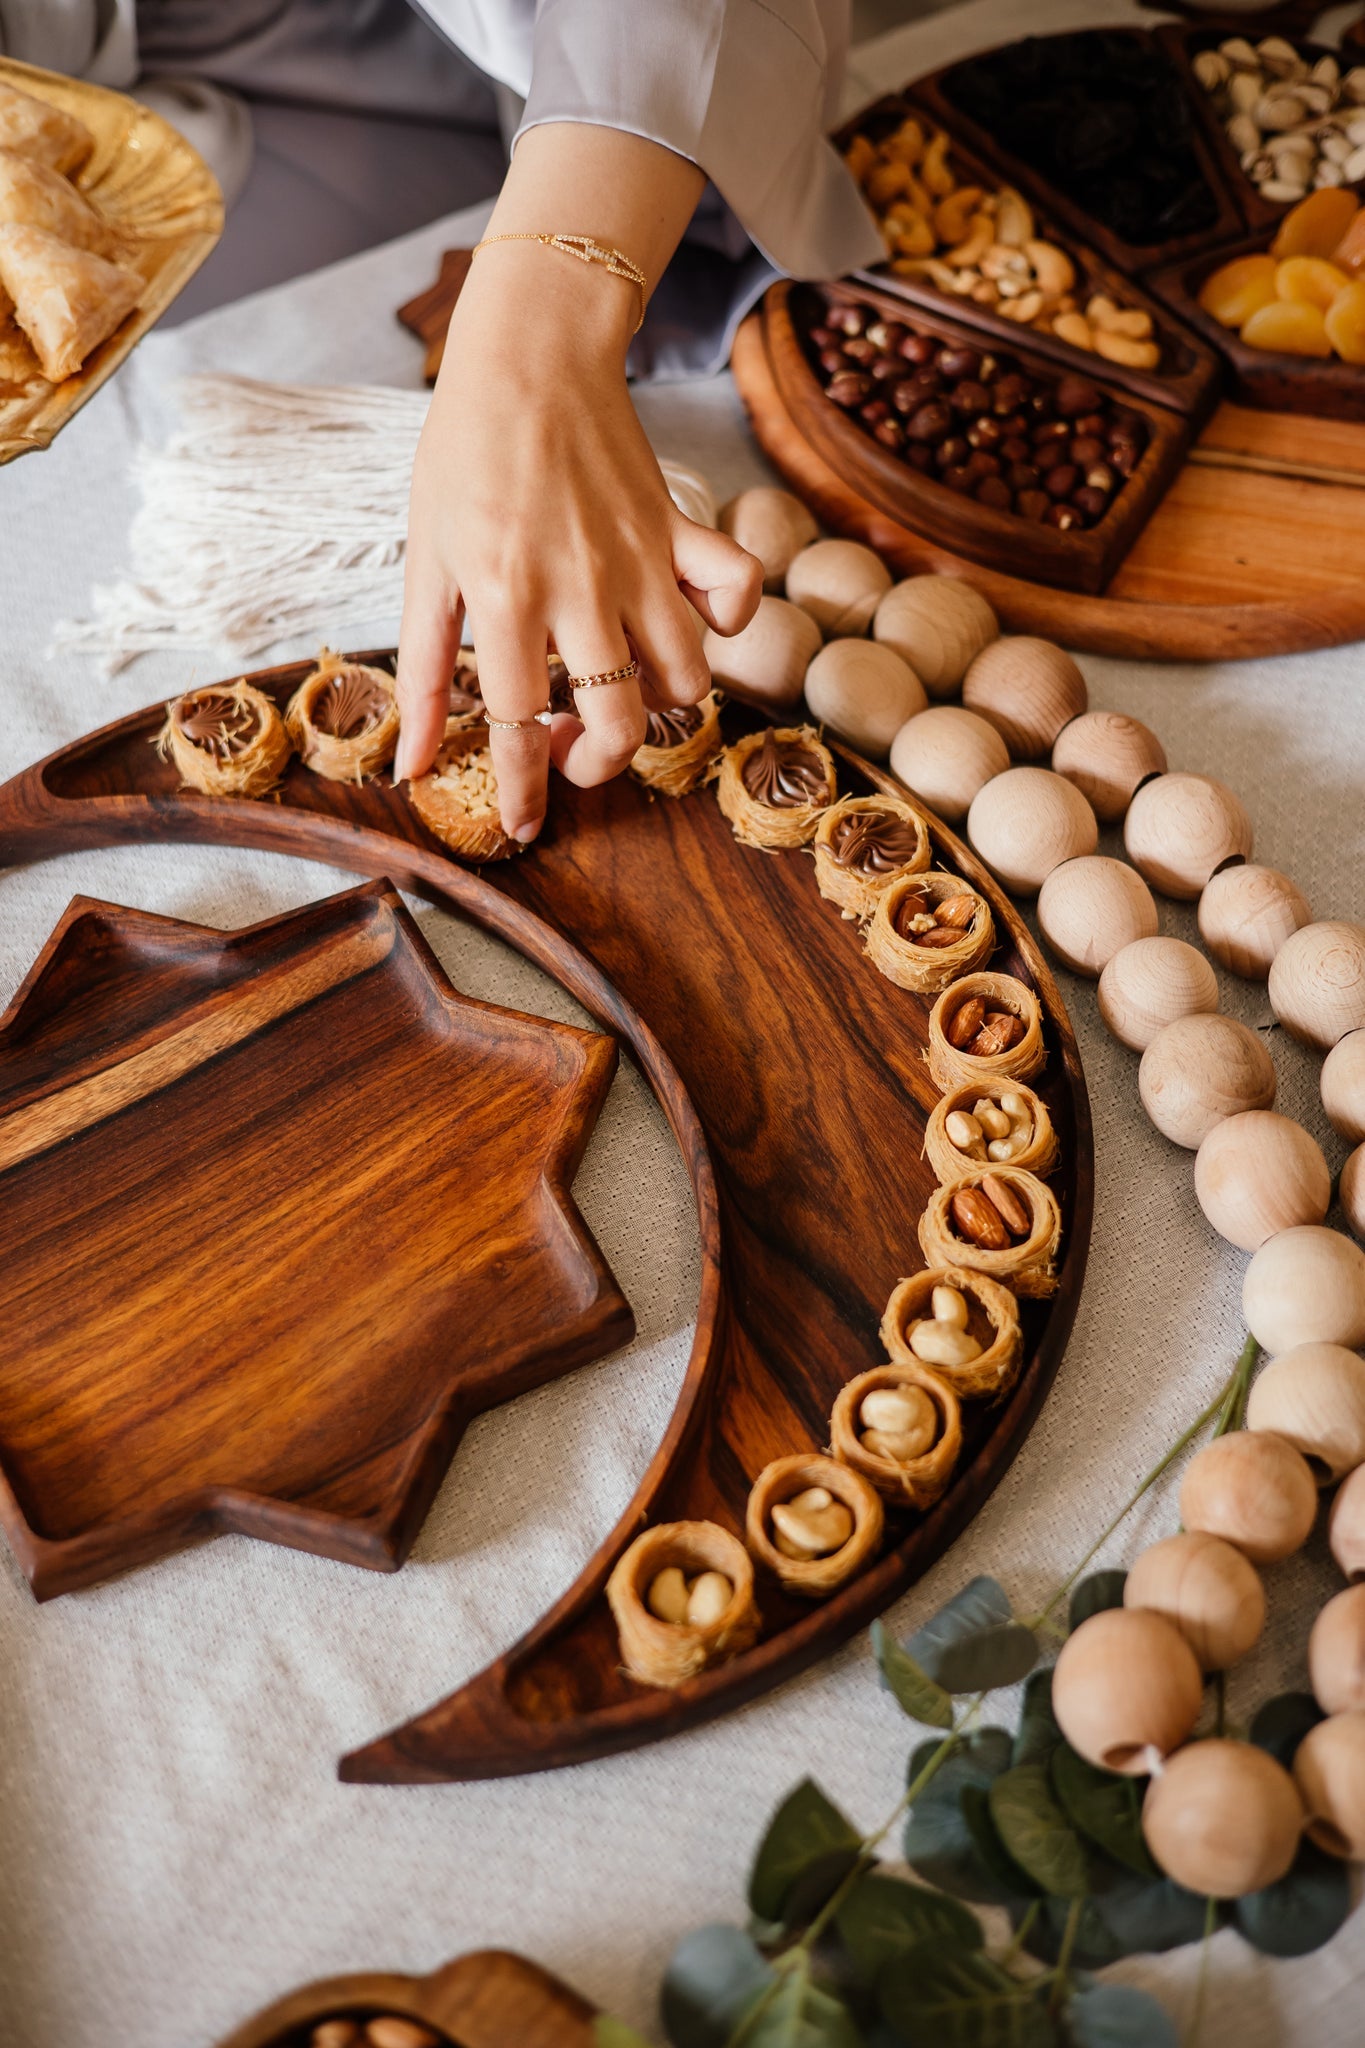 الأطباق الخشبية التي تتميز بهلال مستوحى من الطراز الإسلامي